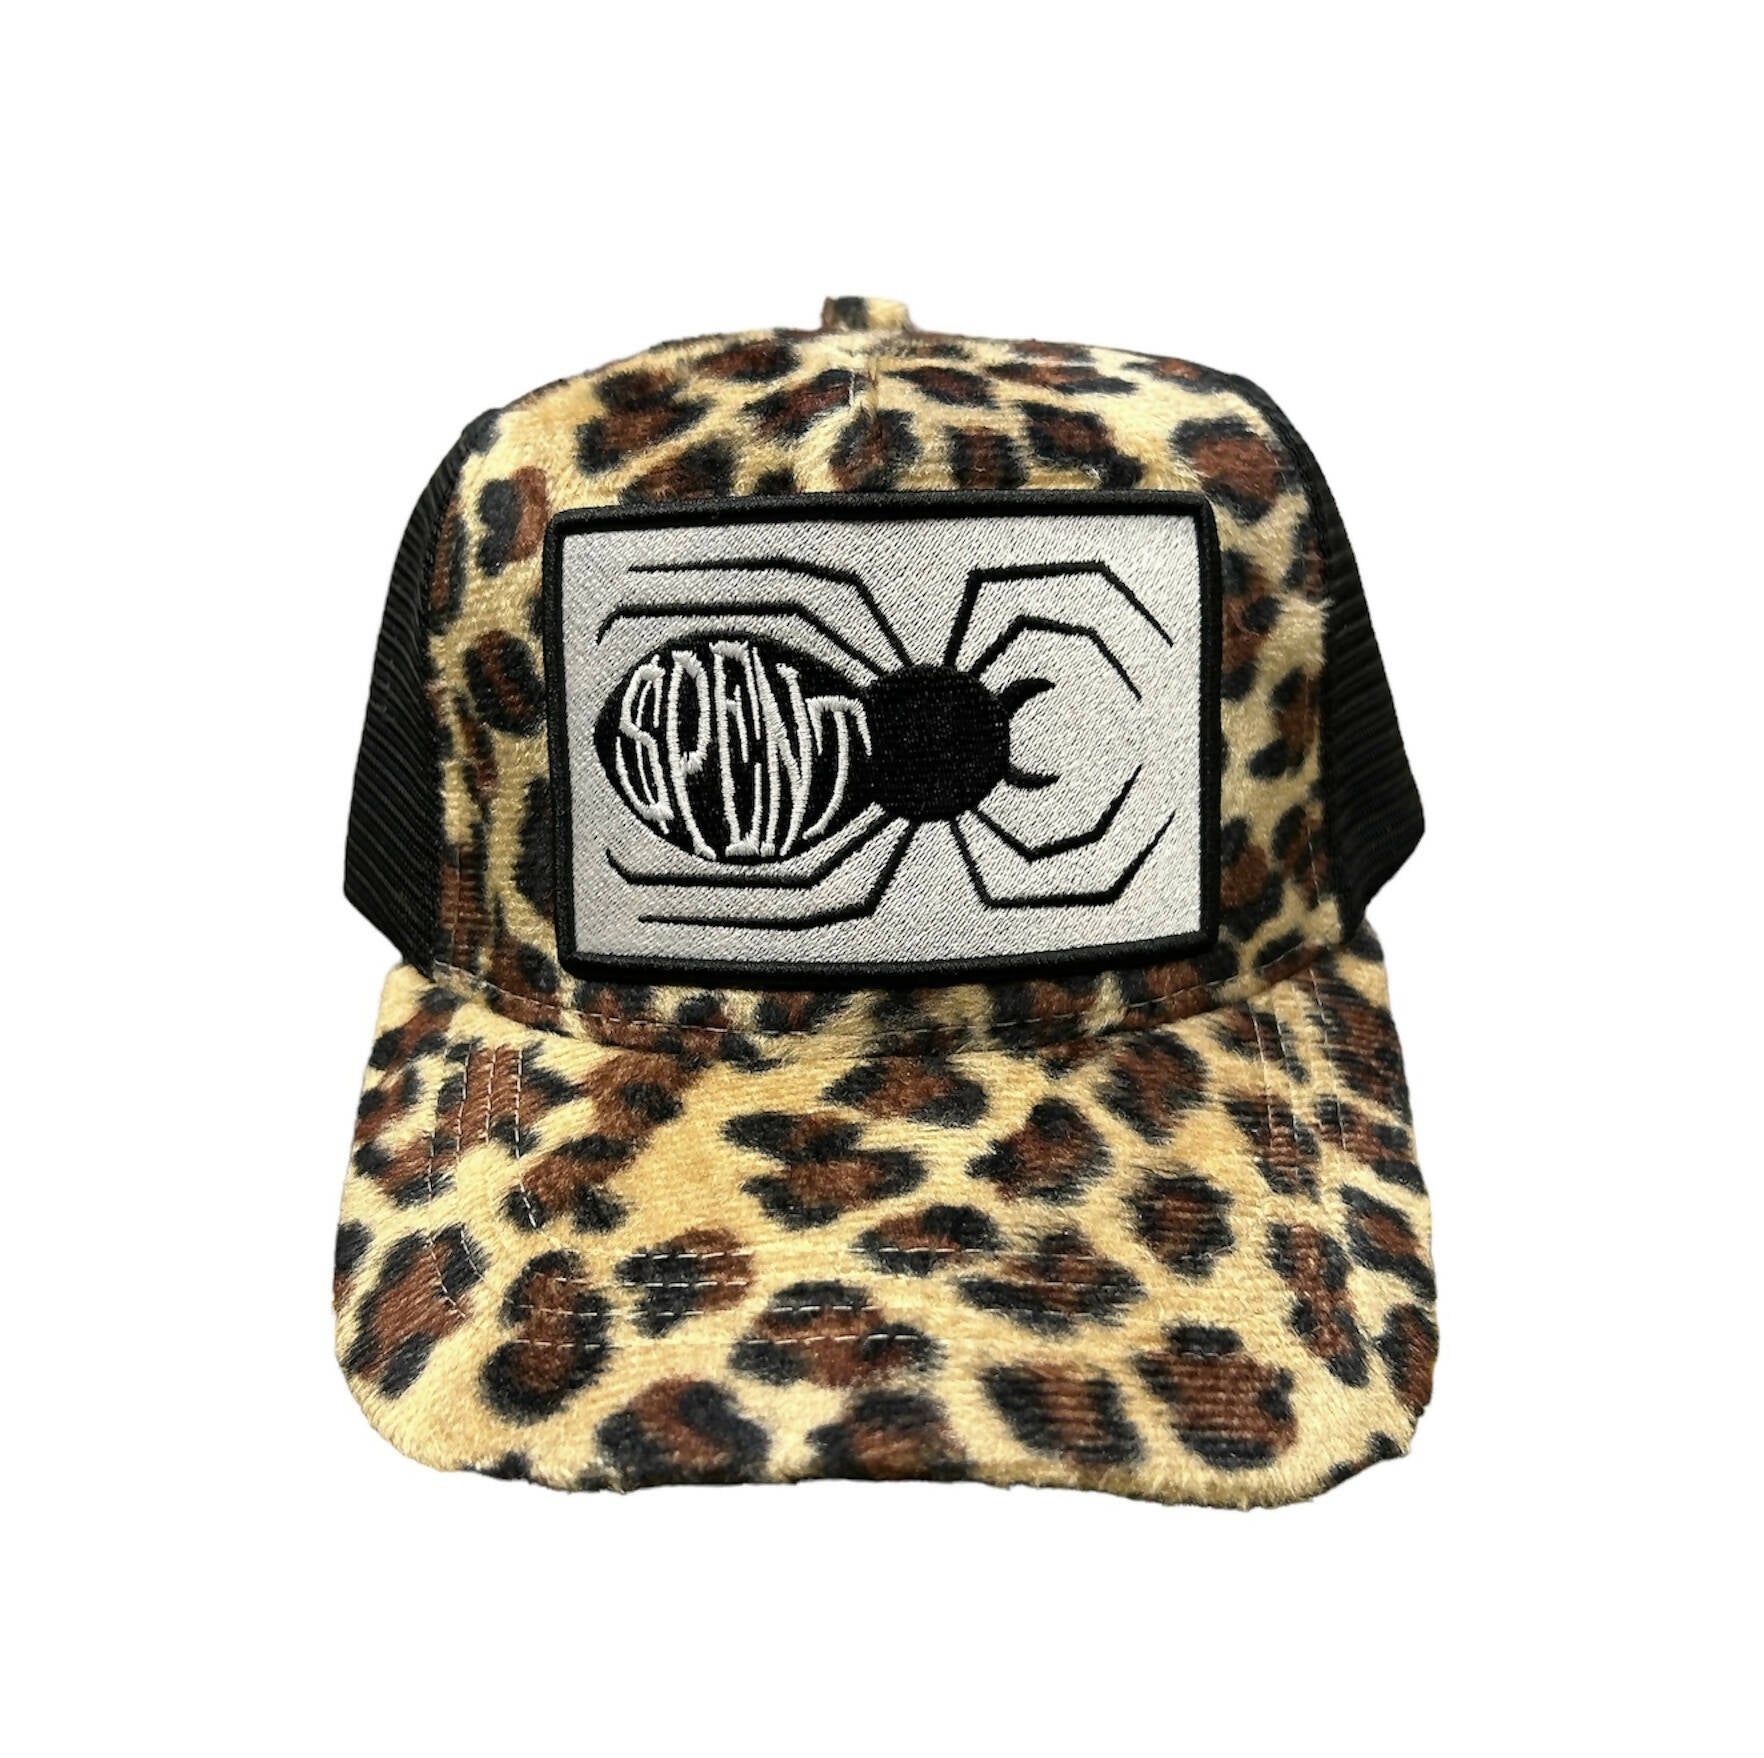 “Leopard $pider” Trucker hat